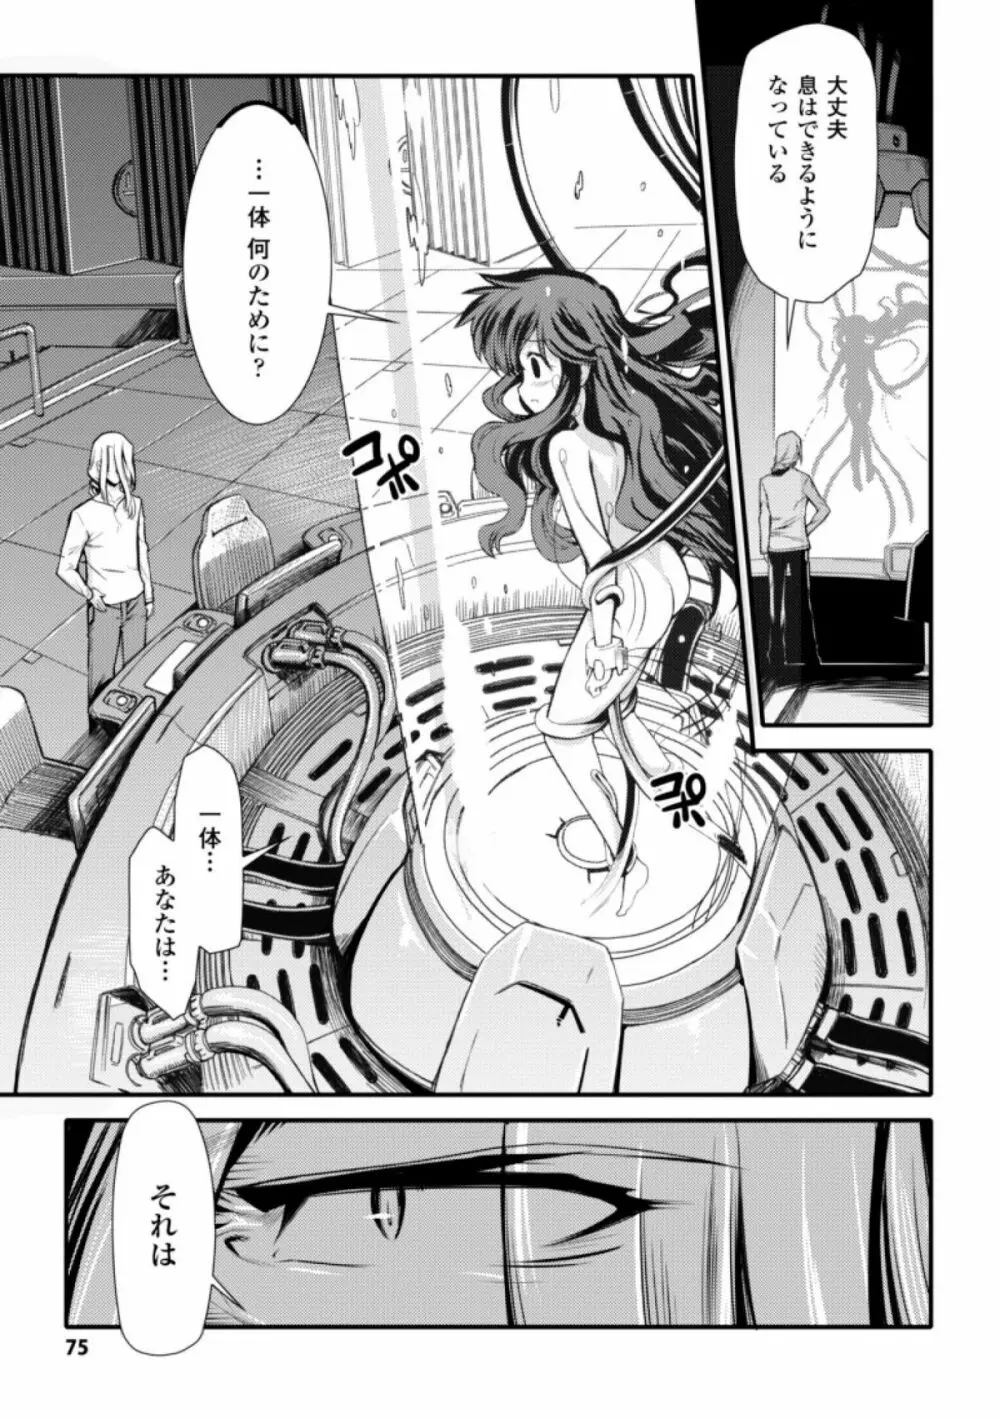 ドリームハンター麗夢XX -蒼の機関騎士- 75ページ